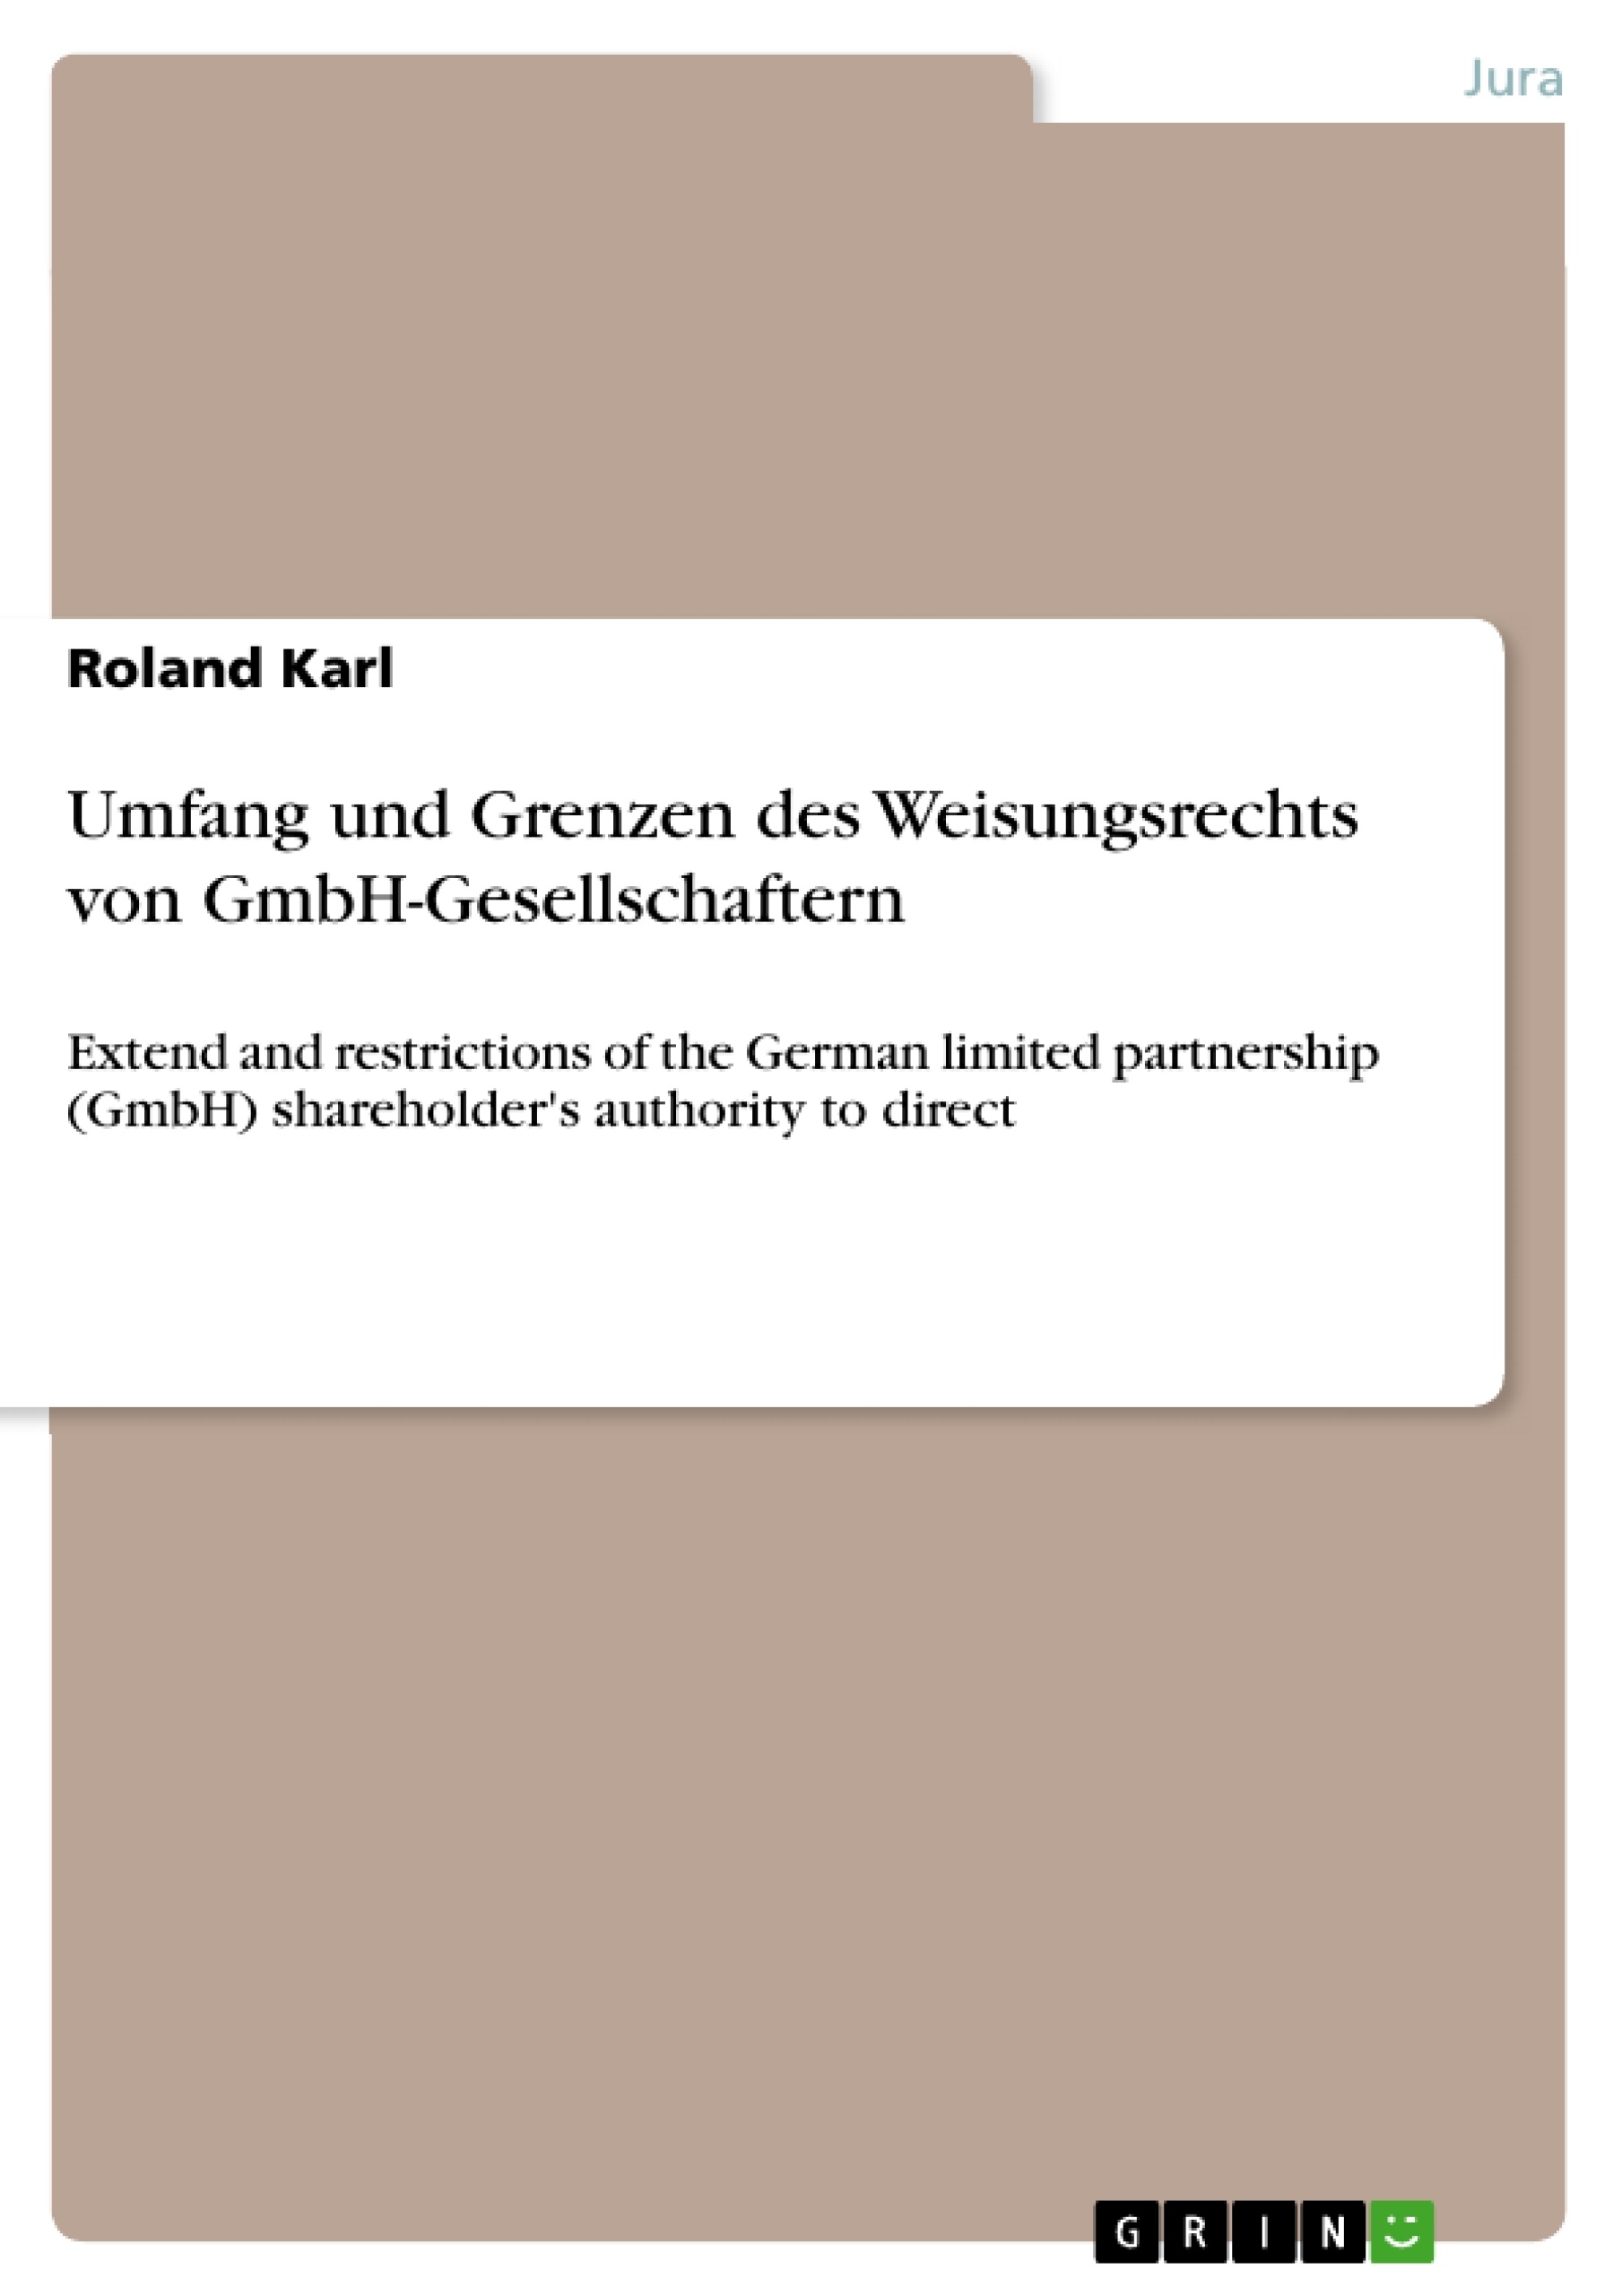 Title: Umfang und Grenzen des Weisungsrechts von GmbH-Gesellschaftern